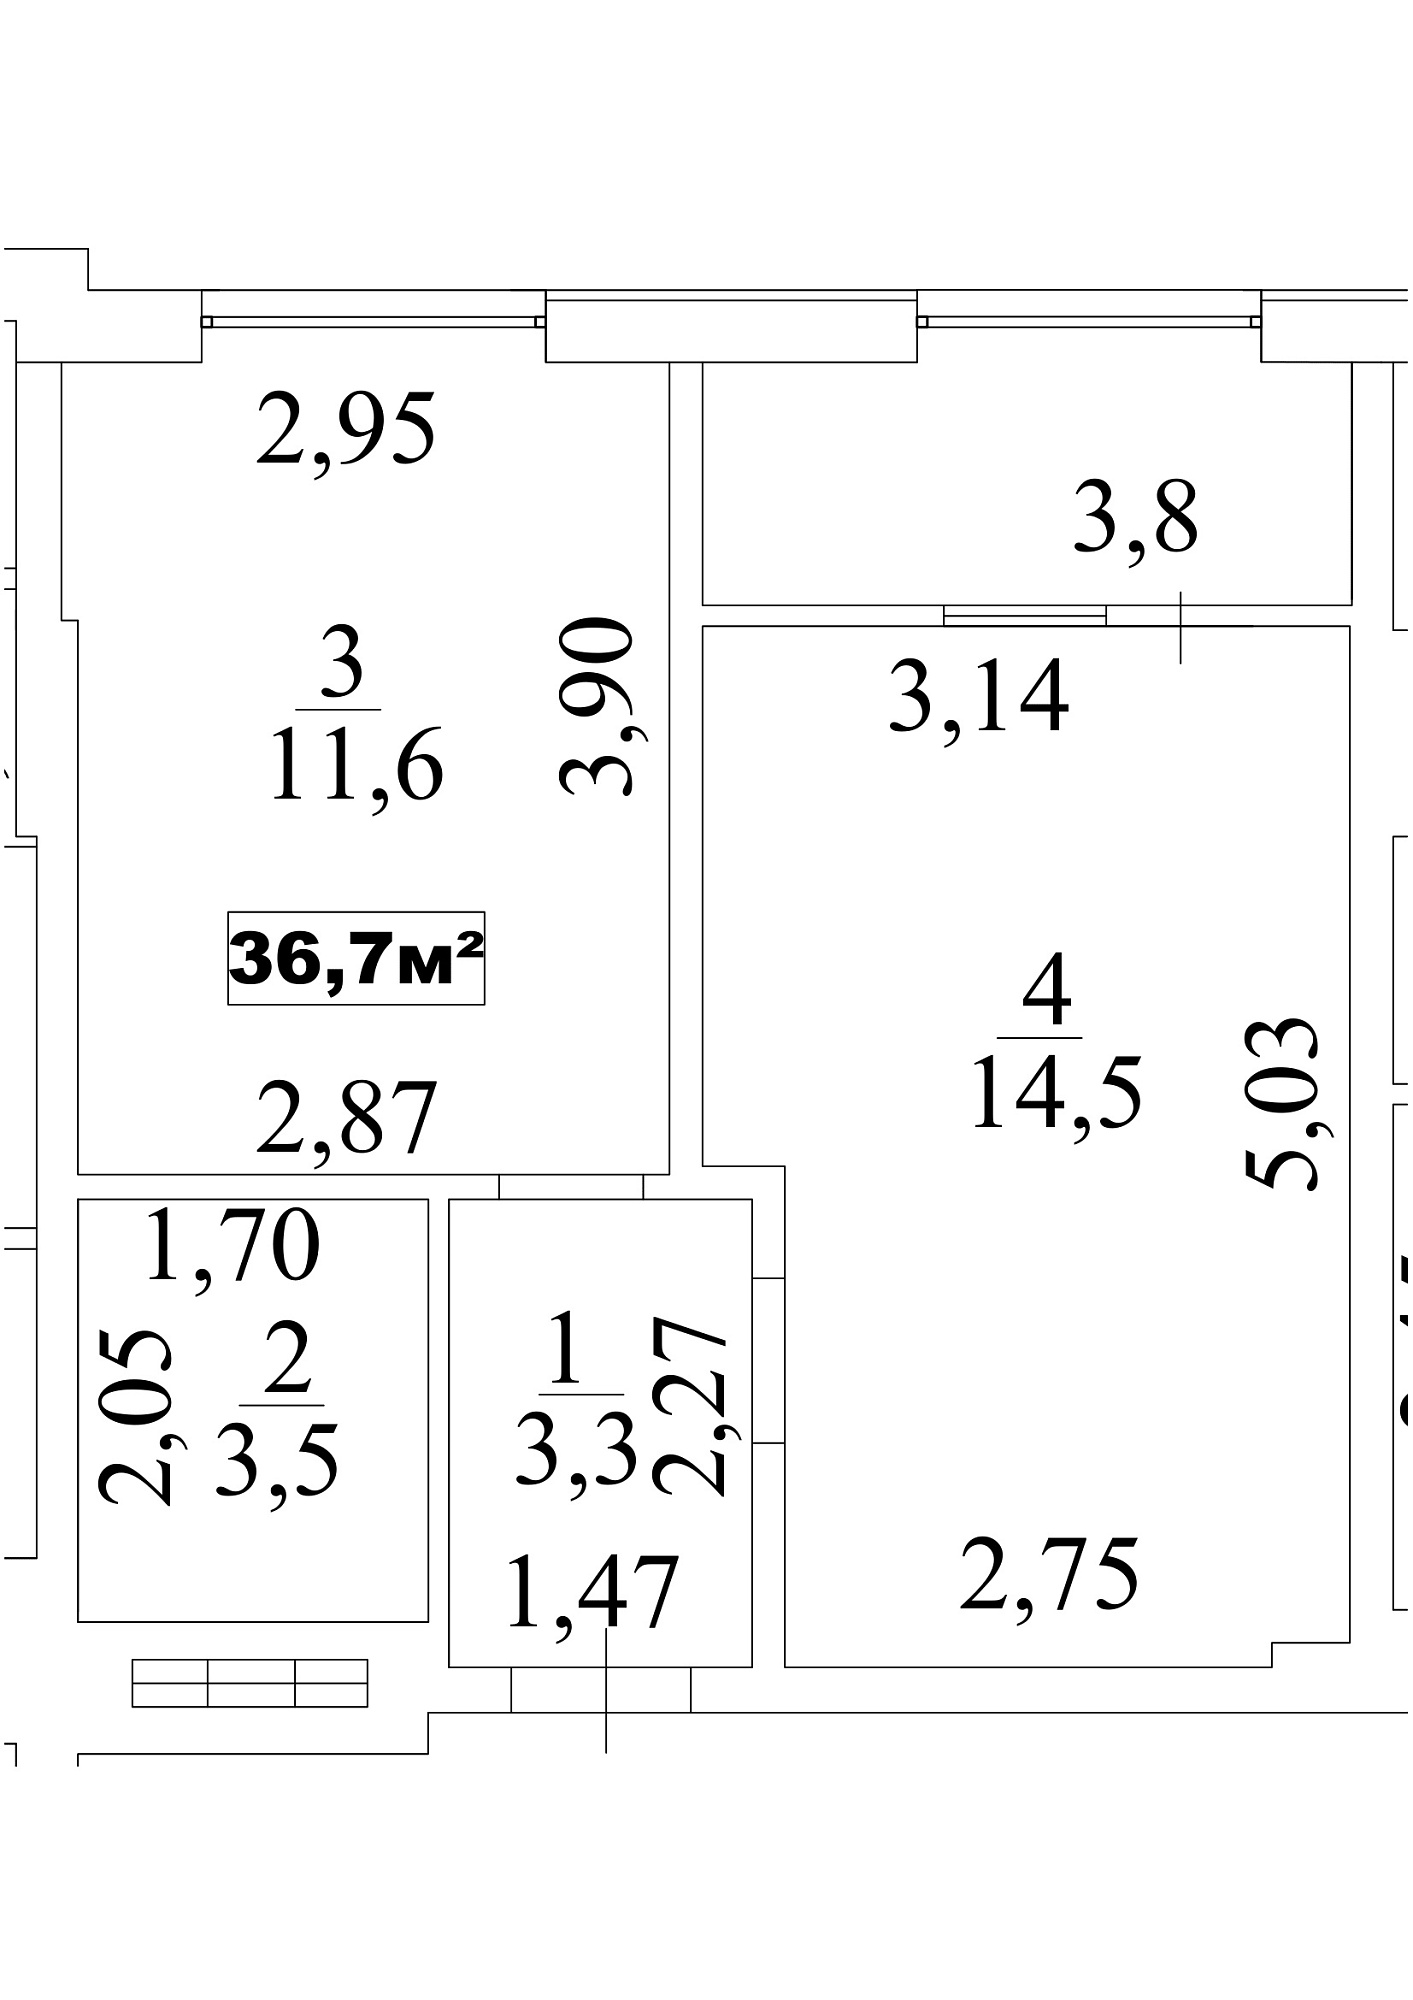 Планування 1-к квартира площею 36.7м2, AB-10-01/00006.